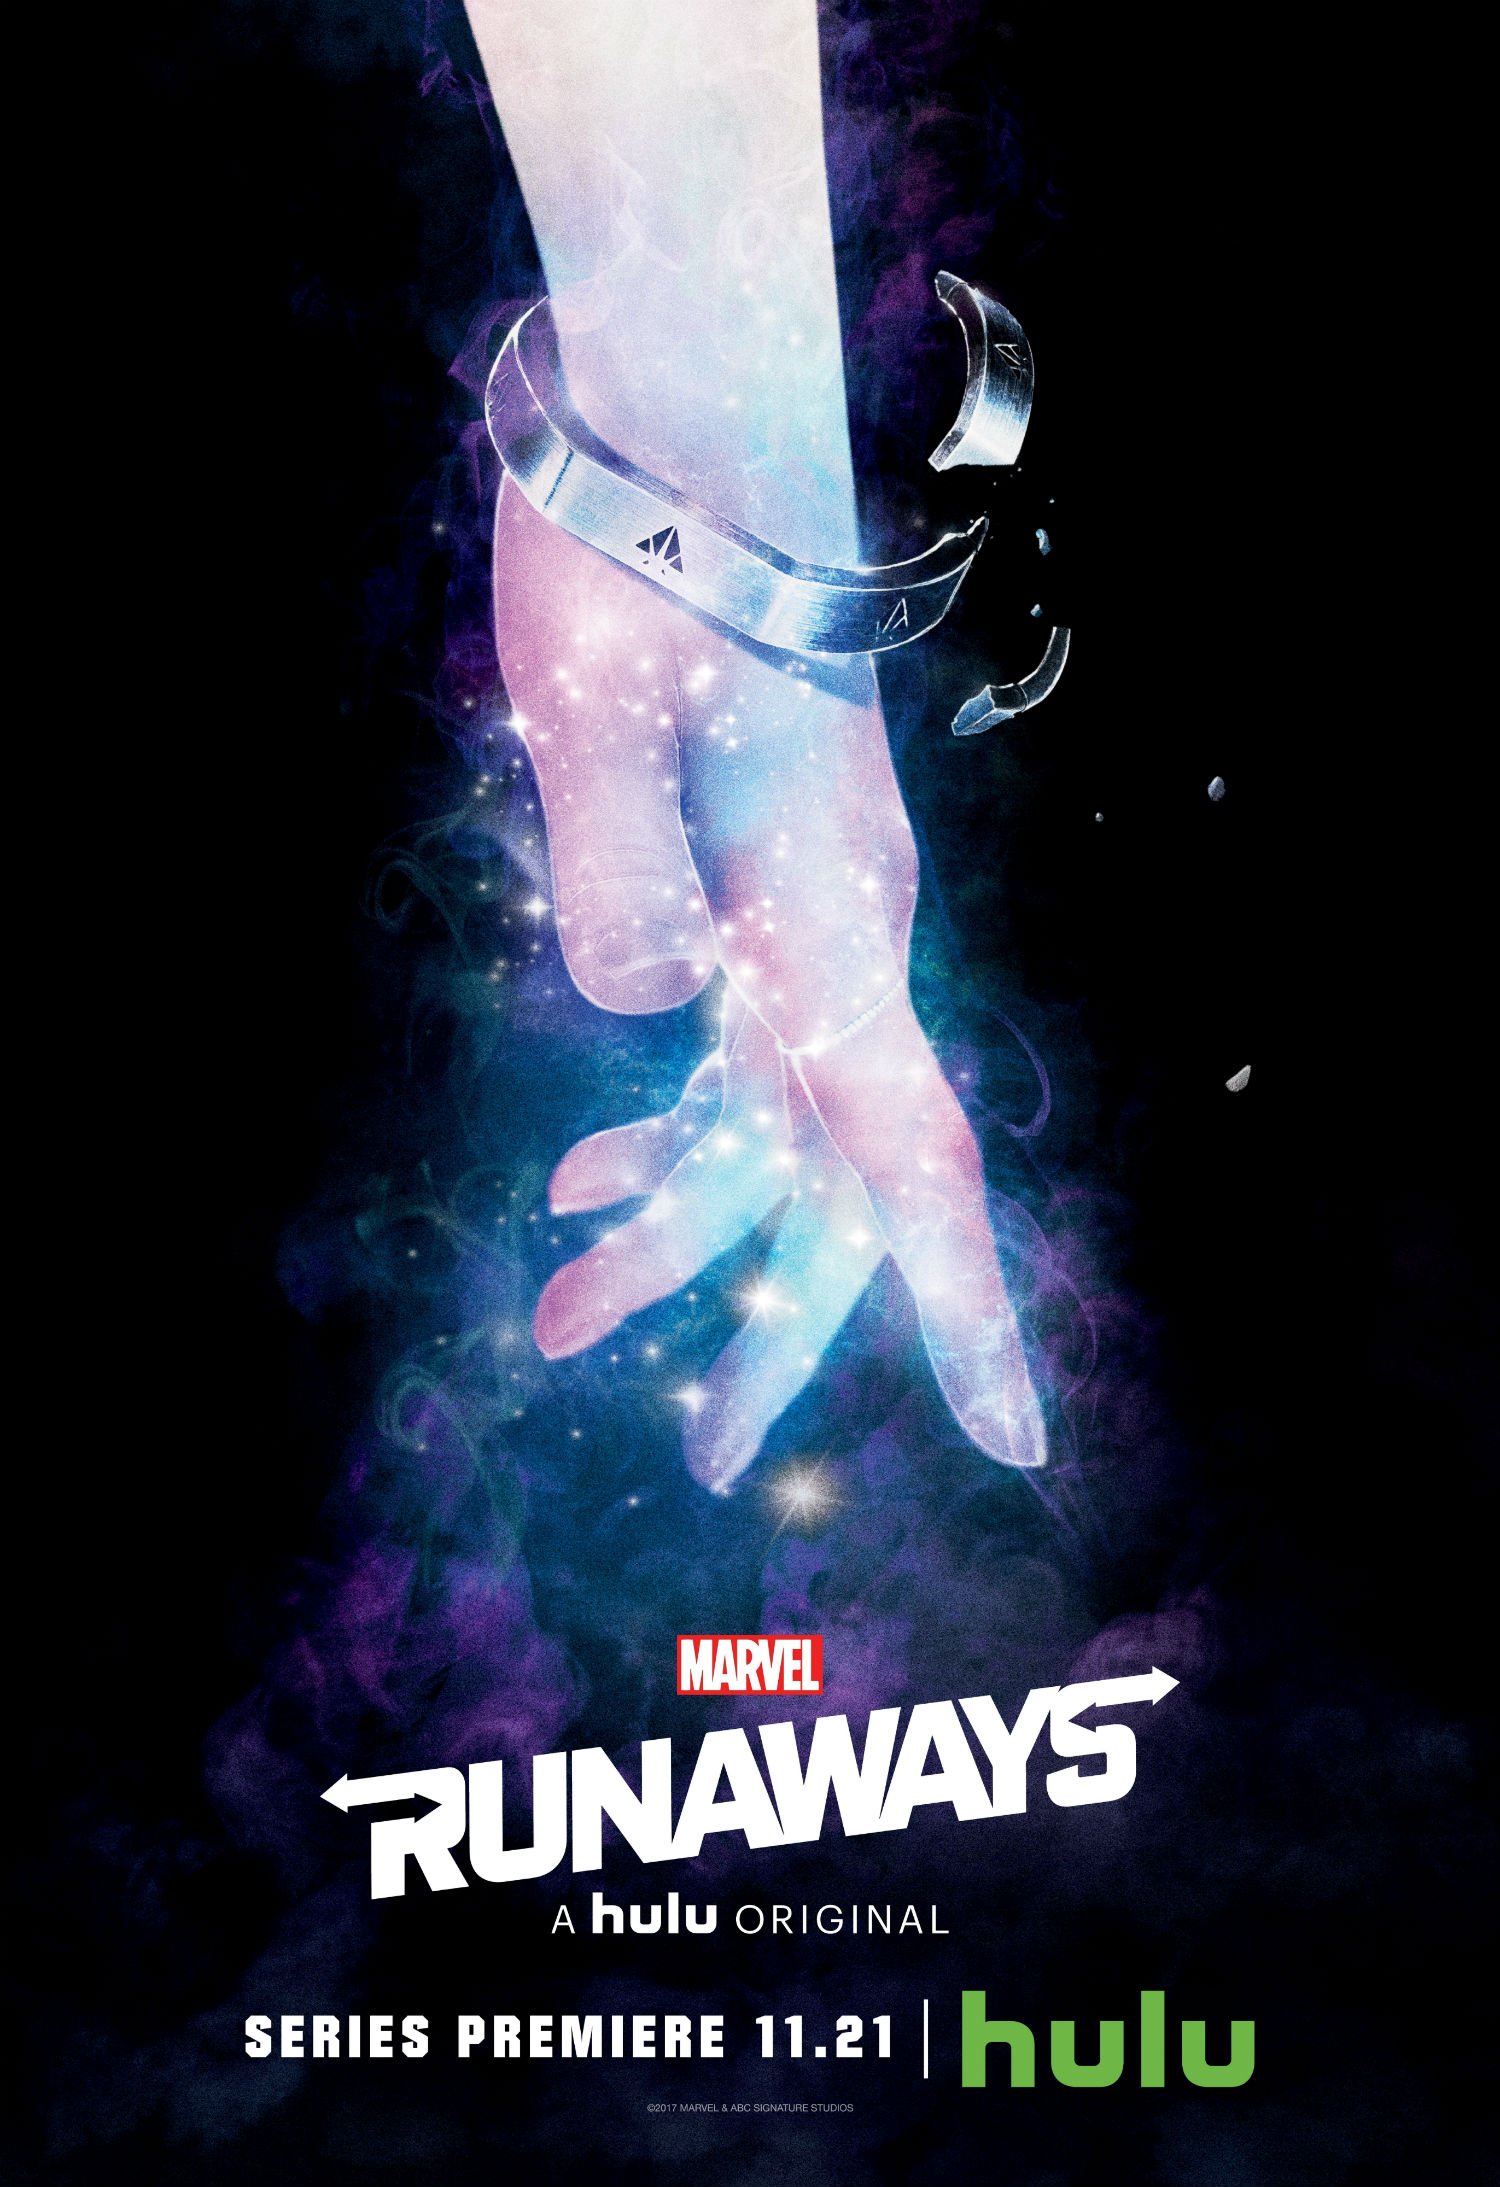 Poster de la saison 1 de Runaways avec le poing de Karolina Dean